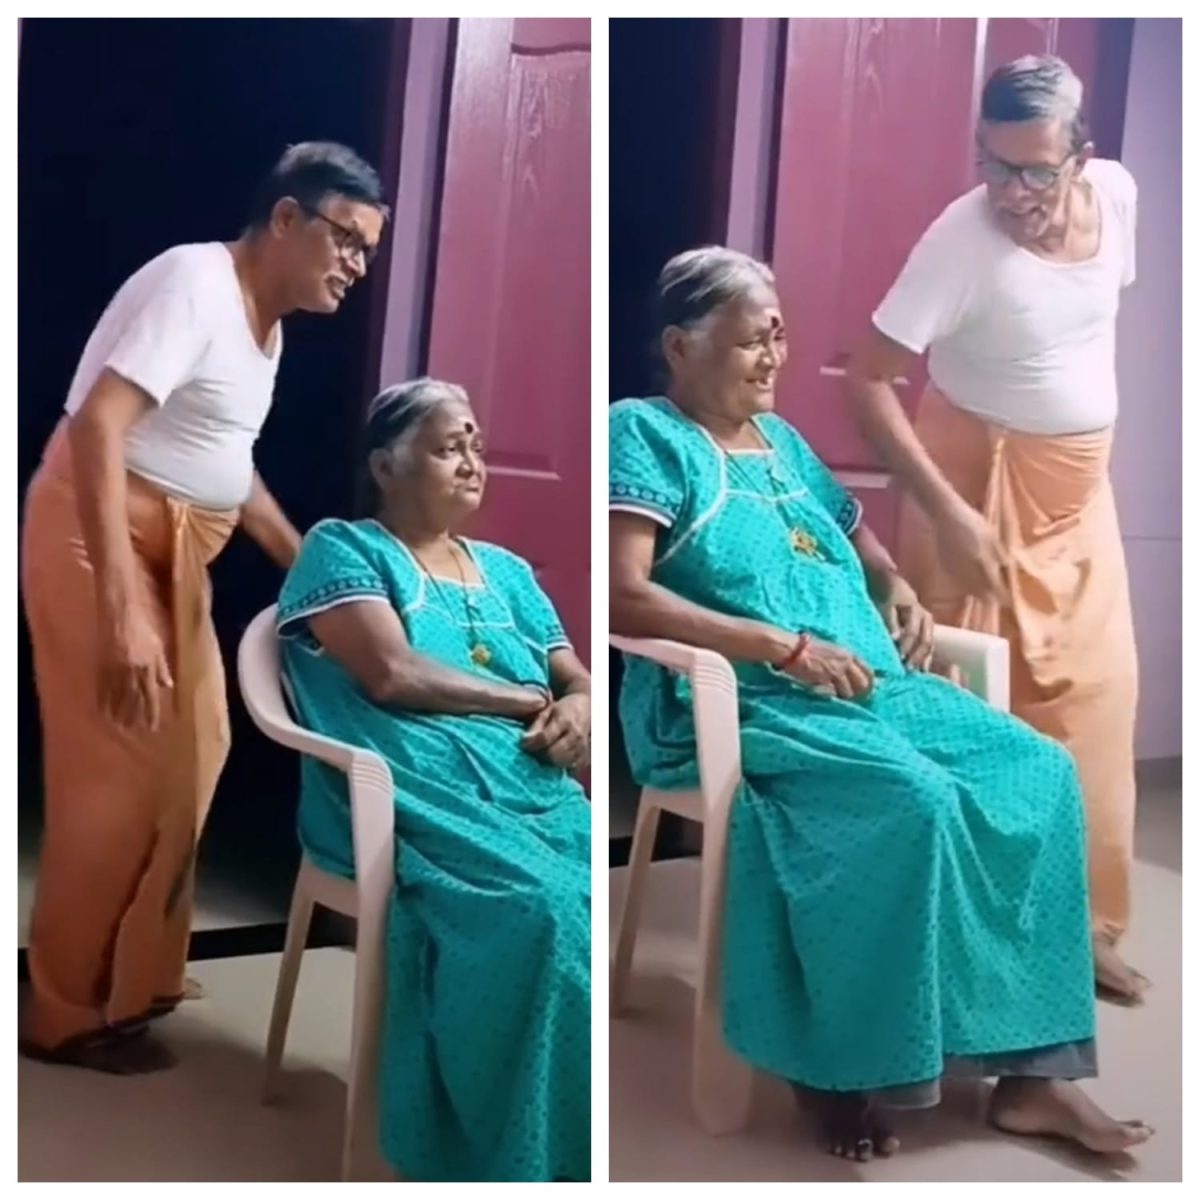 Video : उम्र 70 की दिल 17 का, बुजुर्ग शख्स ने अपनी पत्नी को मनाने के लिए लगाए ठुमके